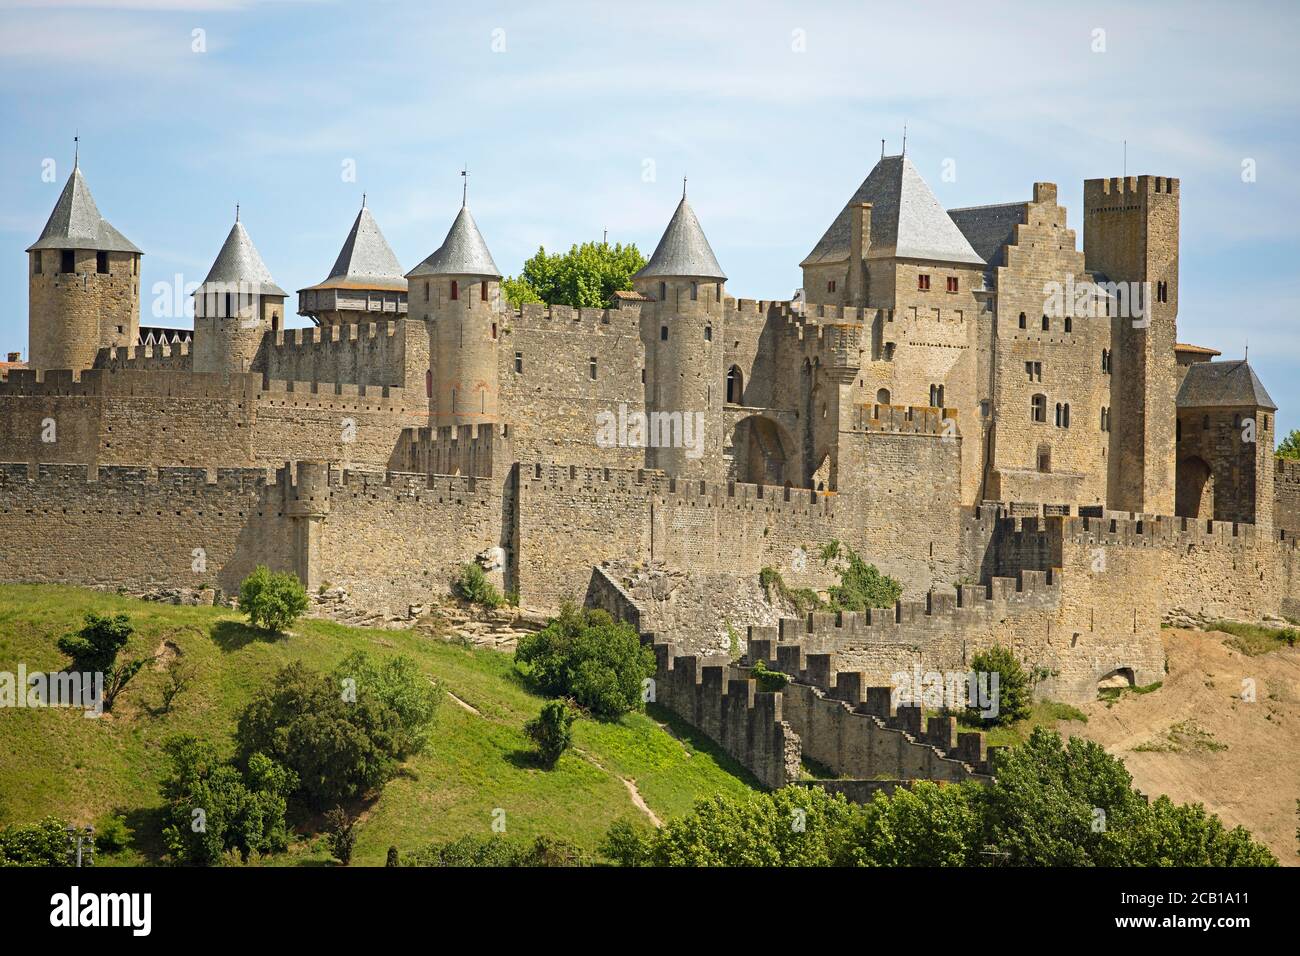 Forteresse médiévale la Cité, Carcassonne, région de l'Occitania, département de l'Aude, France Banque D'Images